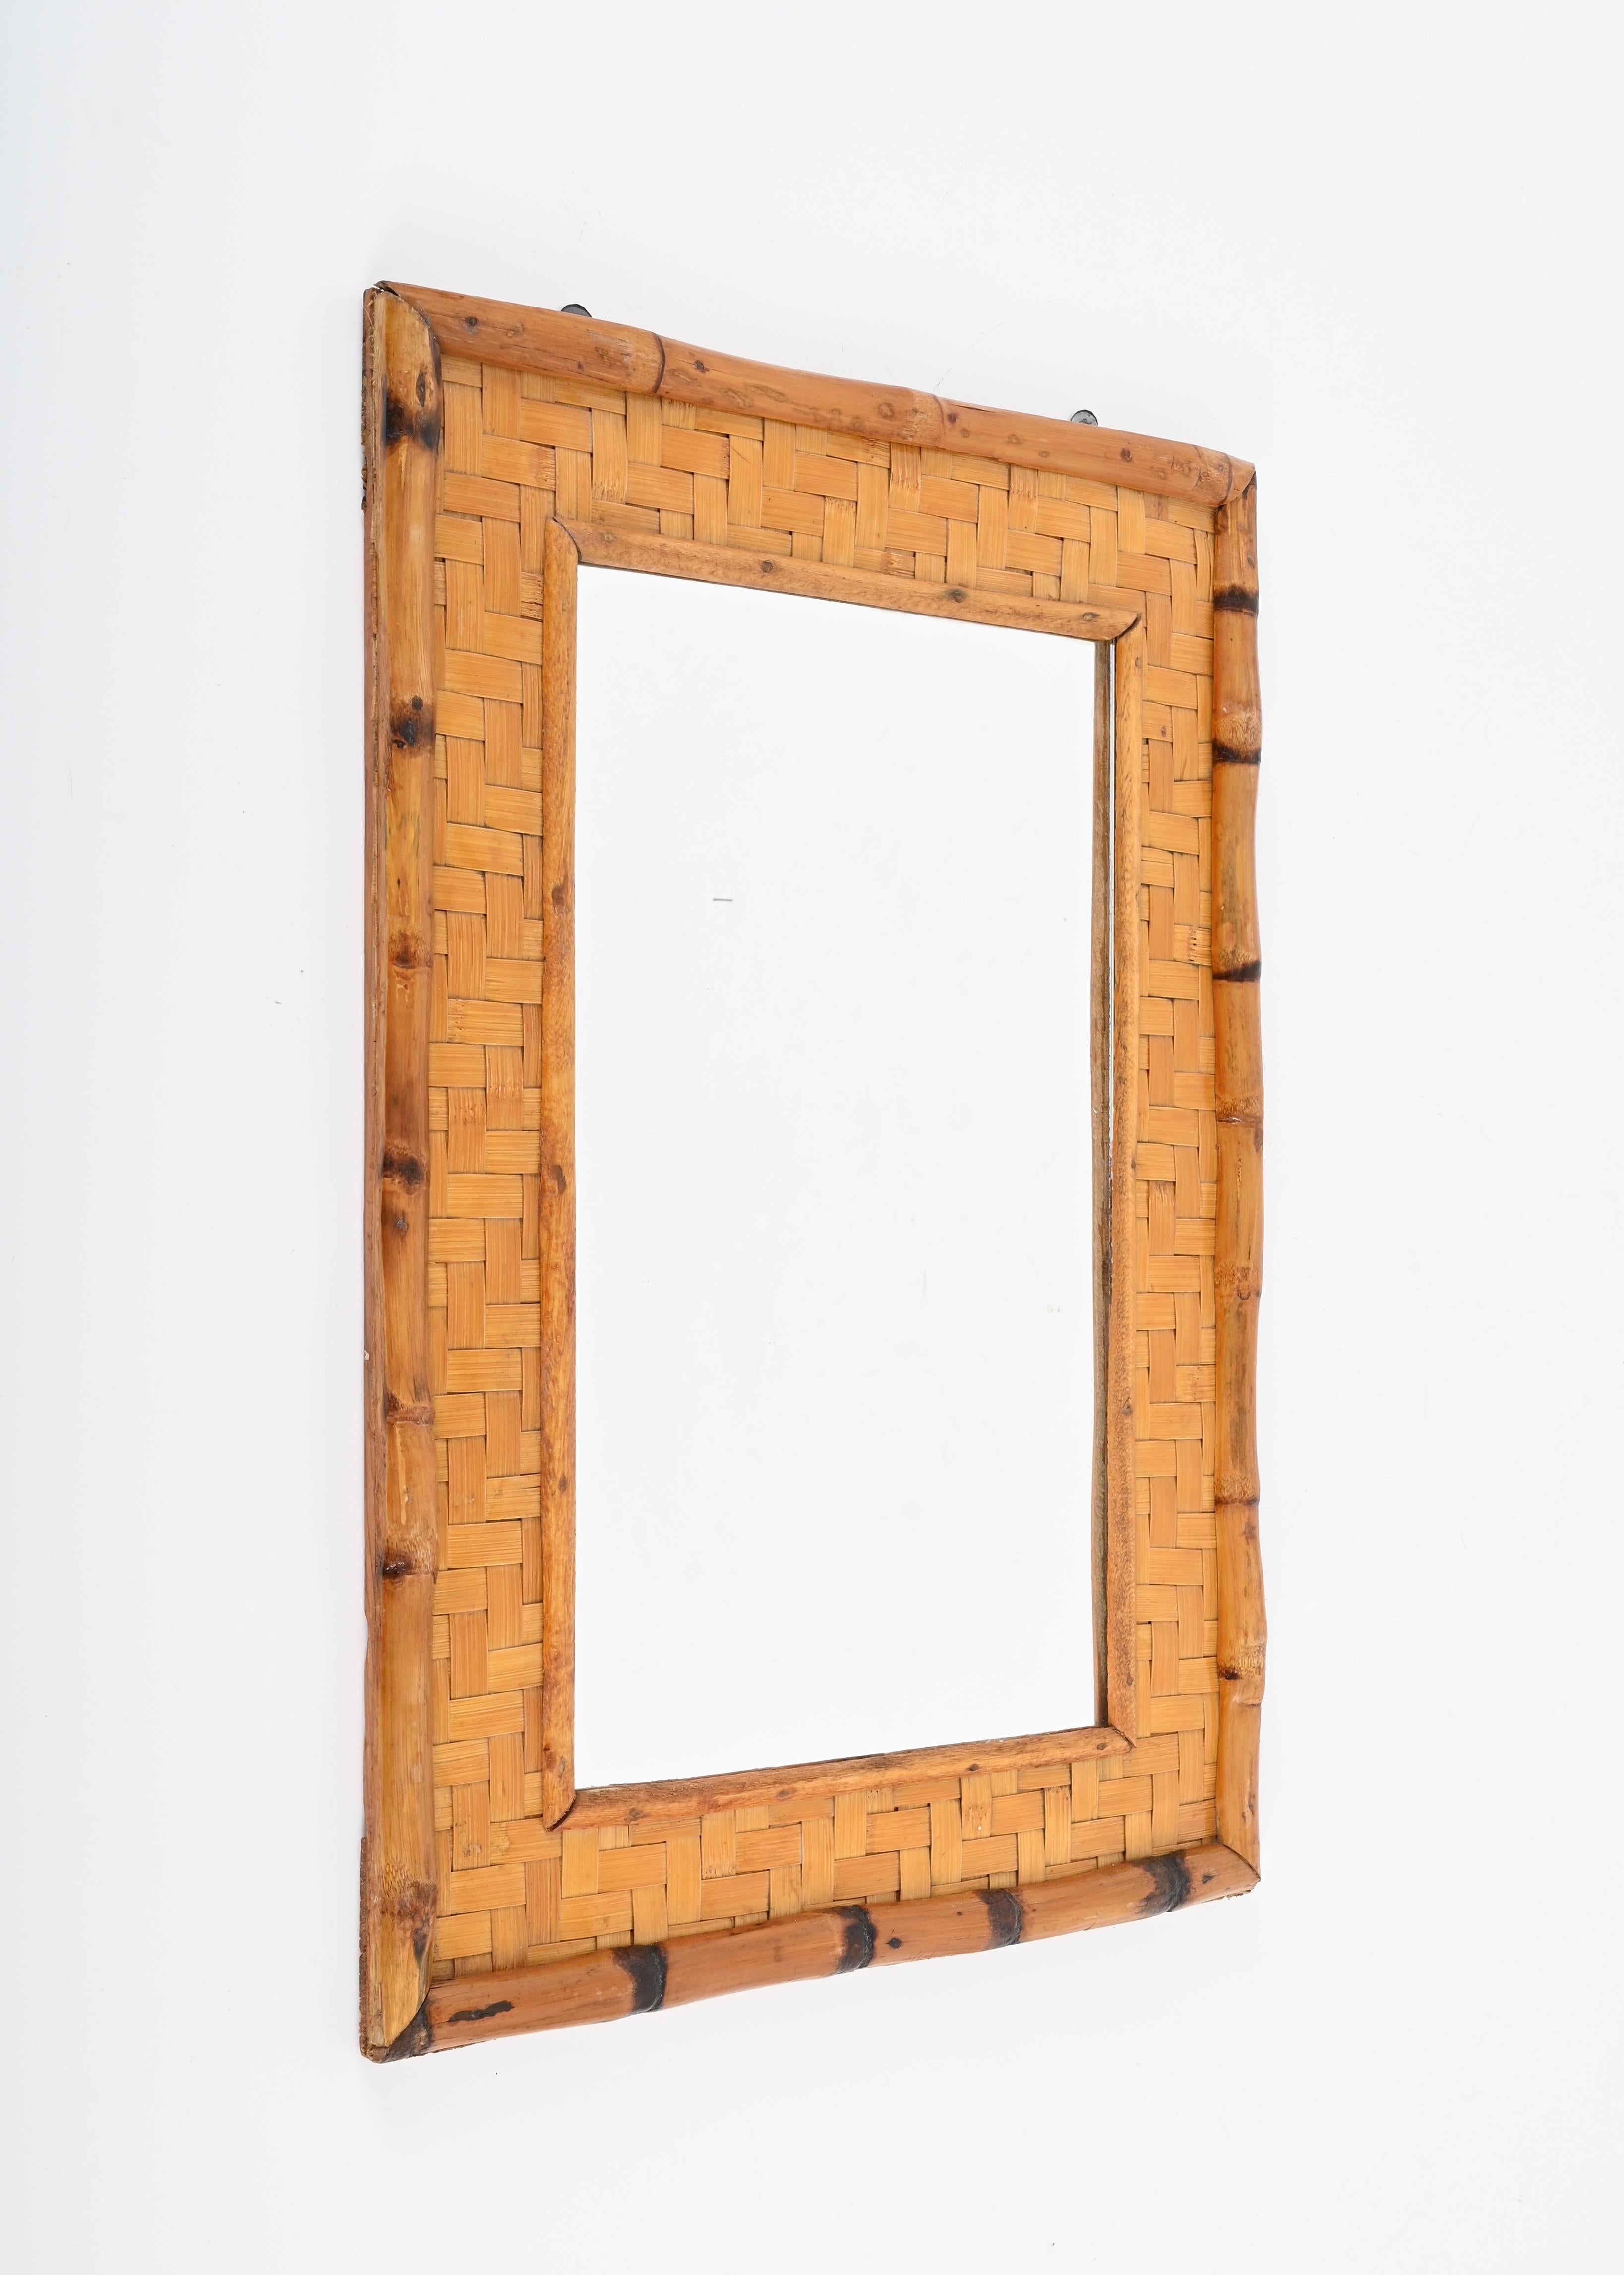 Étonnant miroir rectangulaire du milieu du siècle dernier en canne de bambou et rotin tressé. Cette pièce fantastique a été conçue en Italie dans les années 1960.

Ce miroir est unique grâce à son superbe double cadre,  composé d'un cadre extérieur